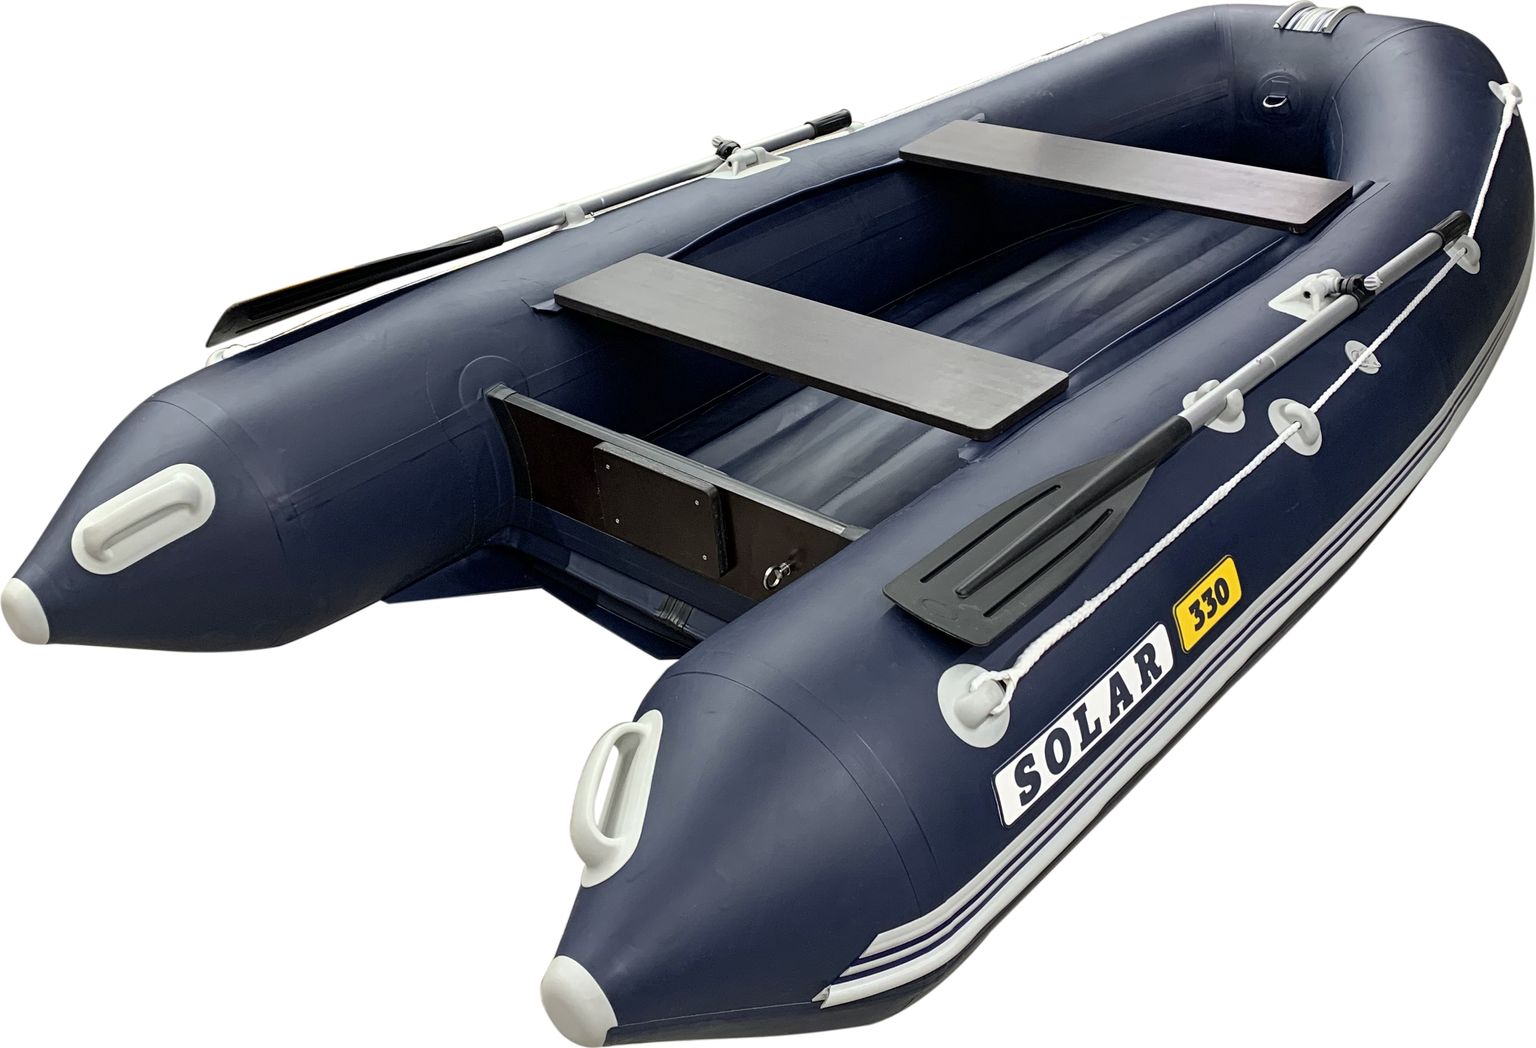 Надувная лодка ПВХ SOLAR-330 К (Оптима), синий SLR330k_opt_blue надувная лодка пвх solar 420 strannik оптима пиксель slr420stk opt pix